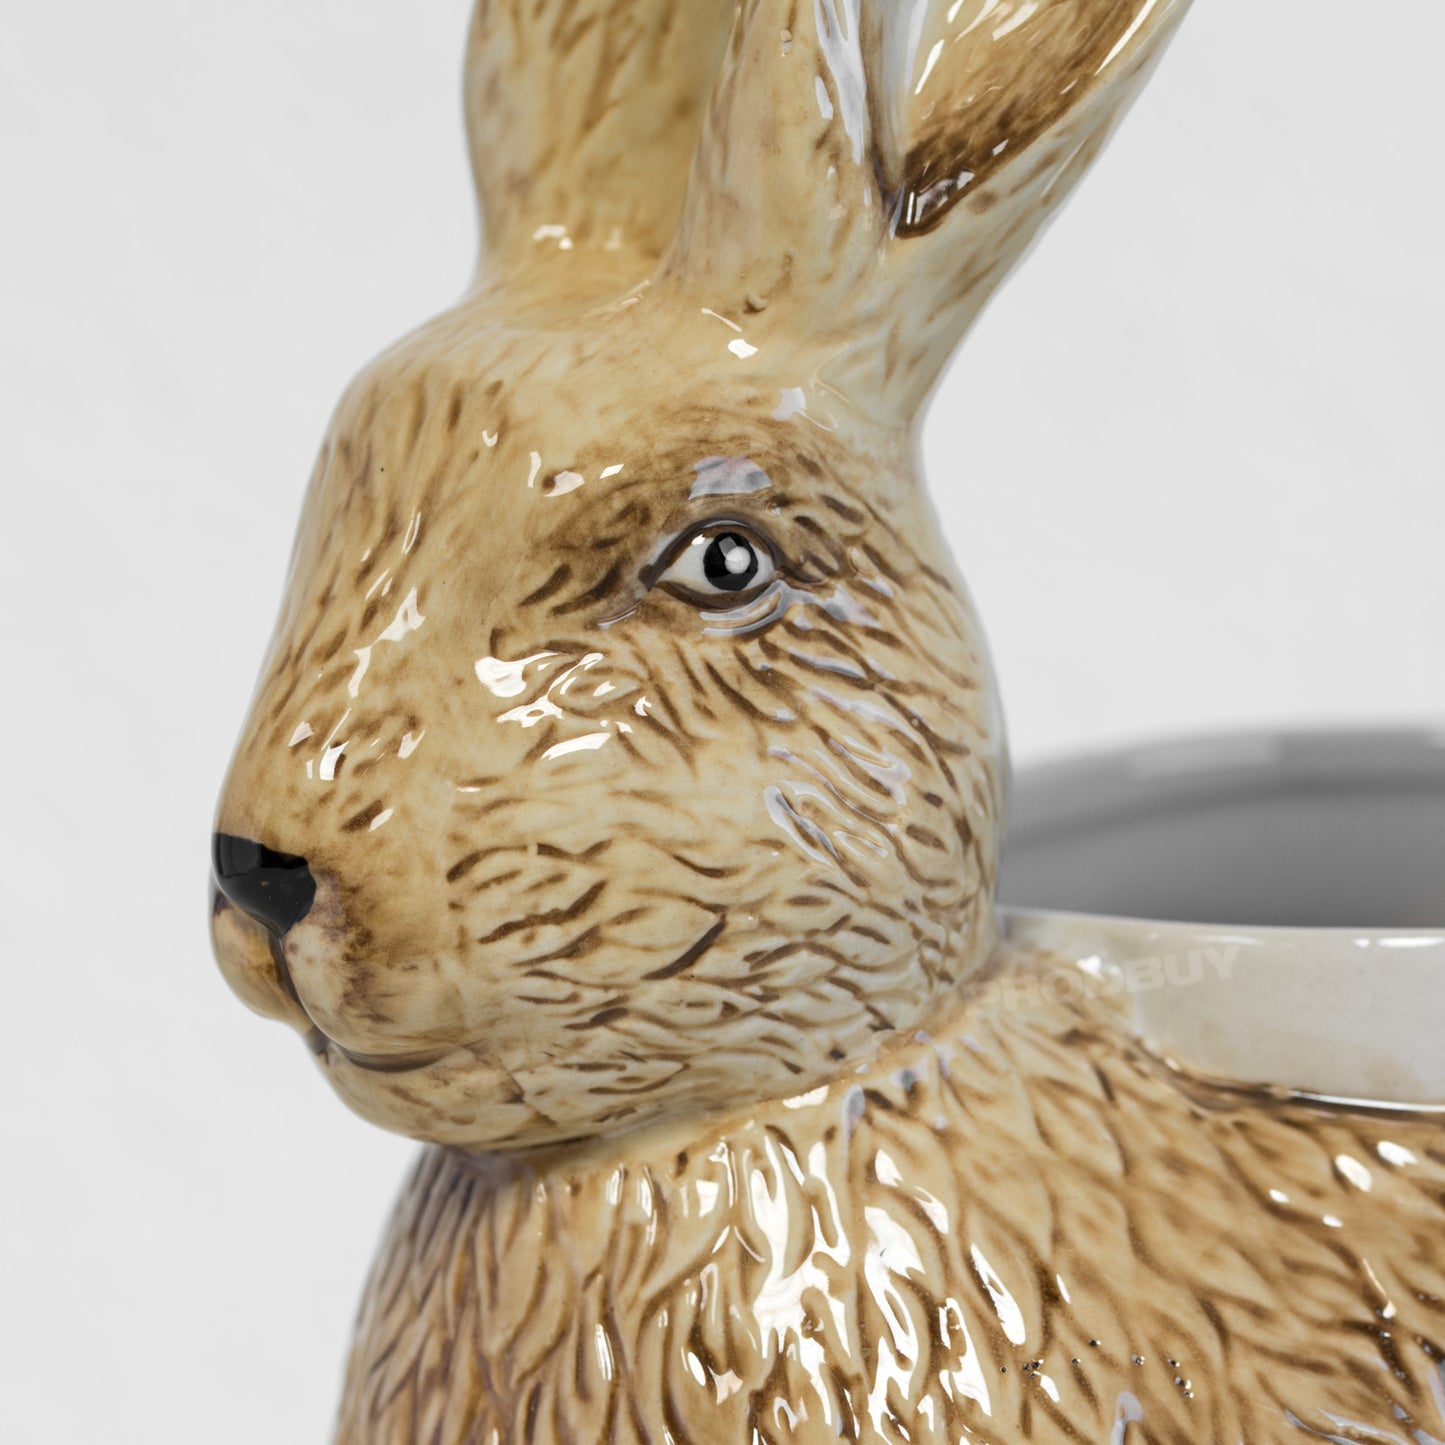 Rabbit Hare Kitchen Utensil Storage Pot